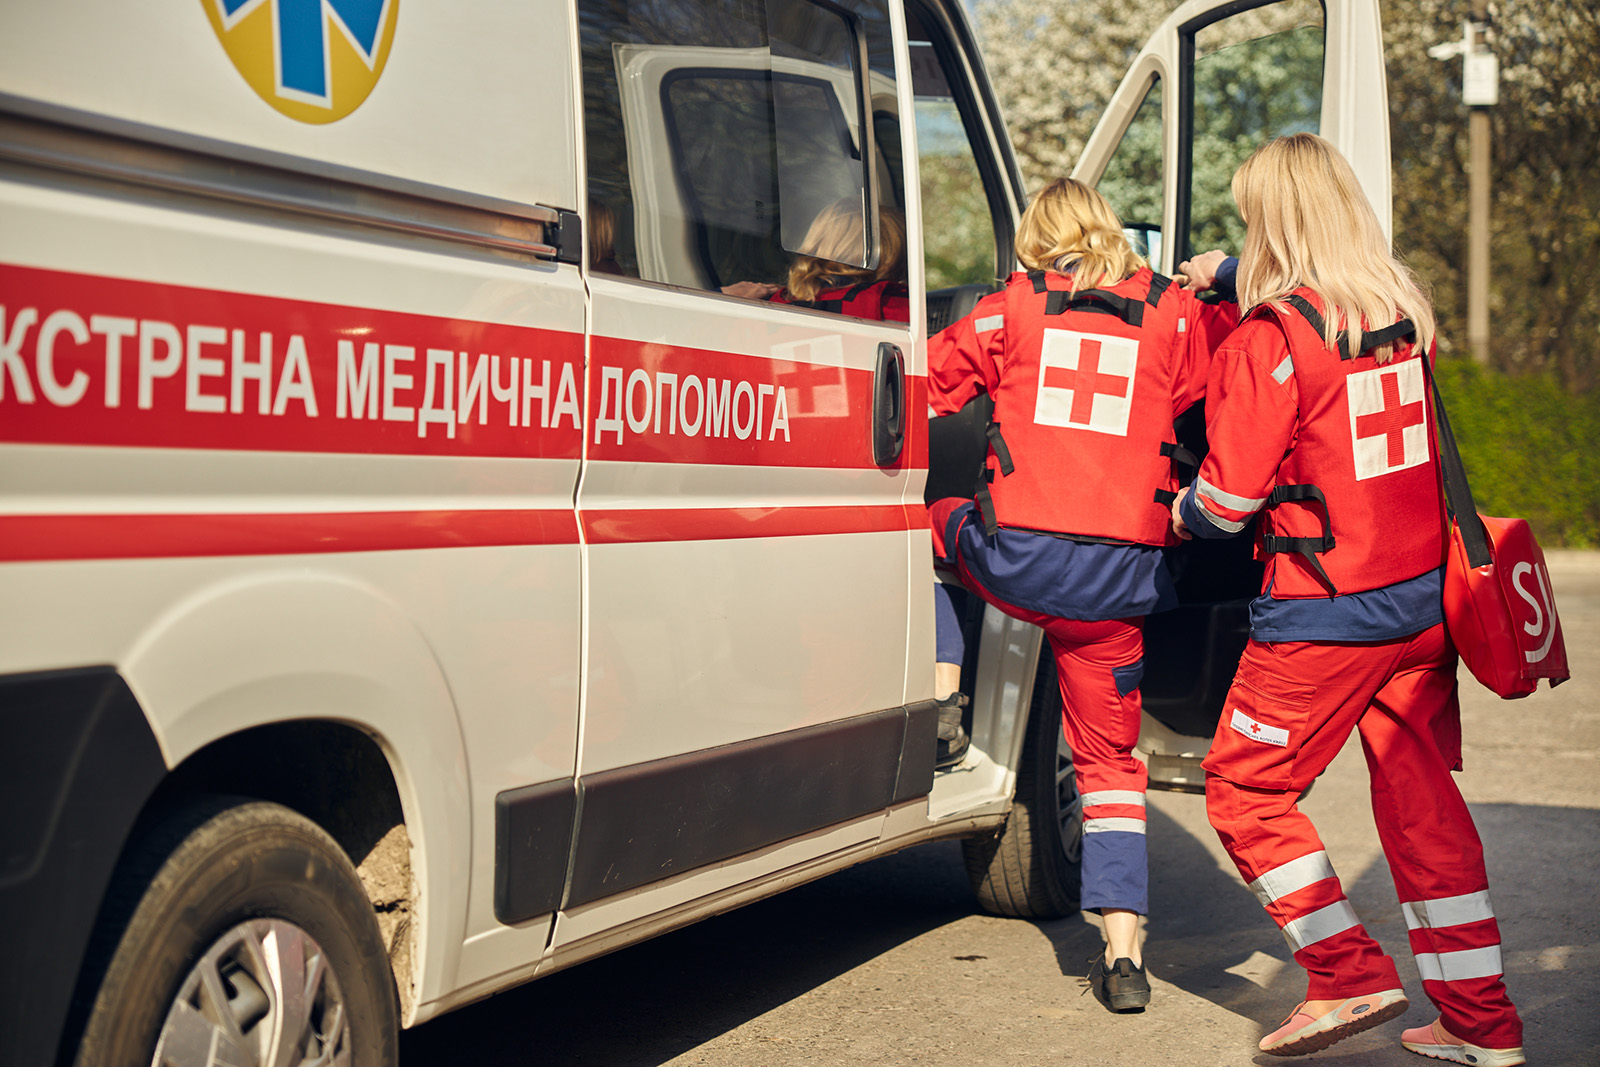 Львівський оборонний кластер планує виготовити і передати українським медикам 3 тисячі спеціалізованих бронежилетів фото 2